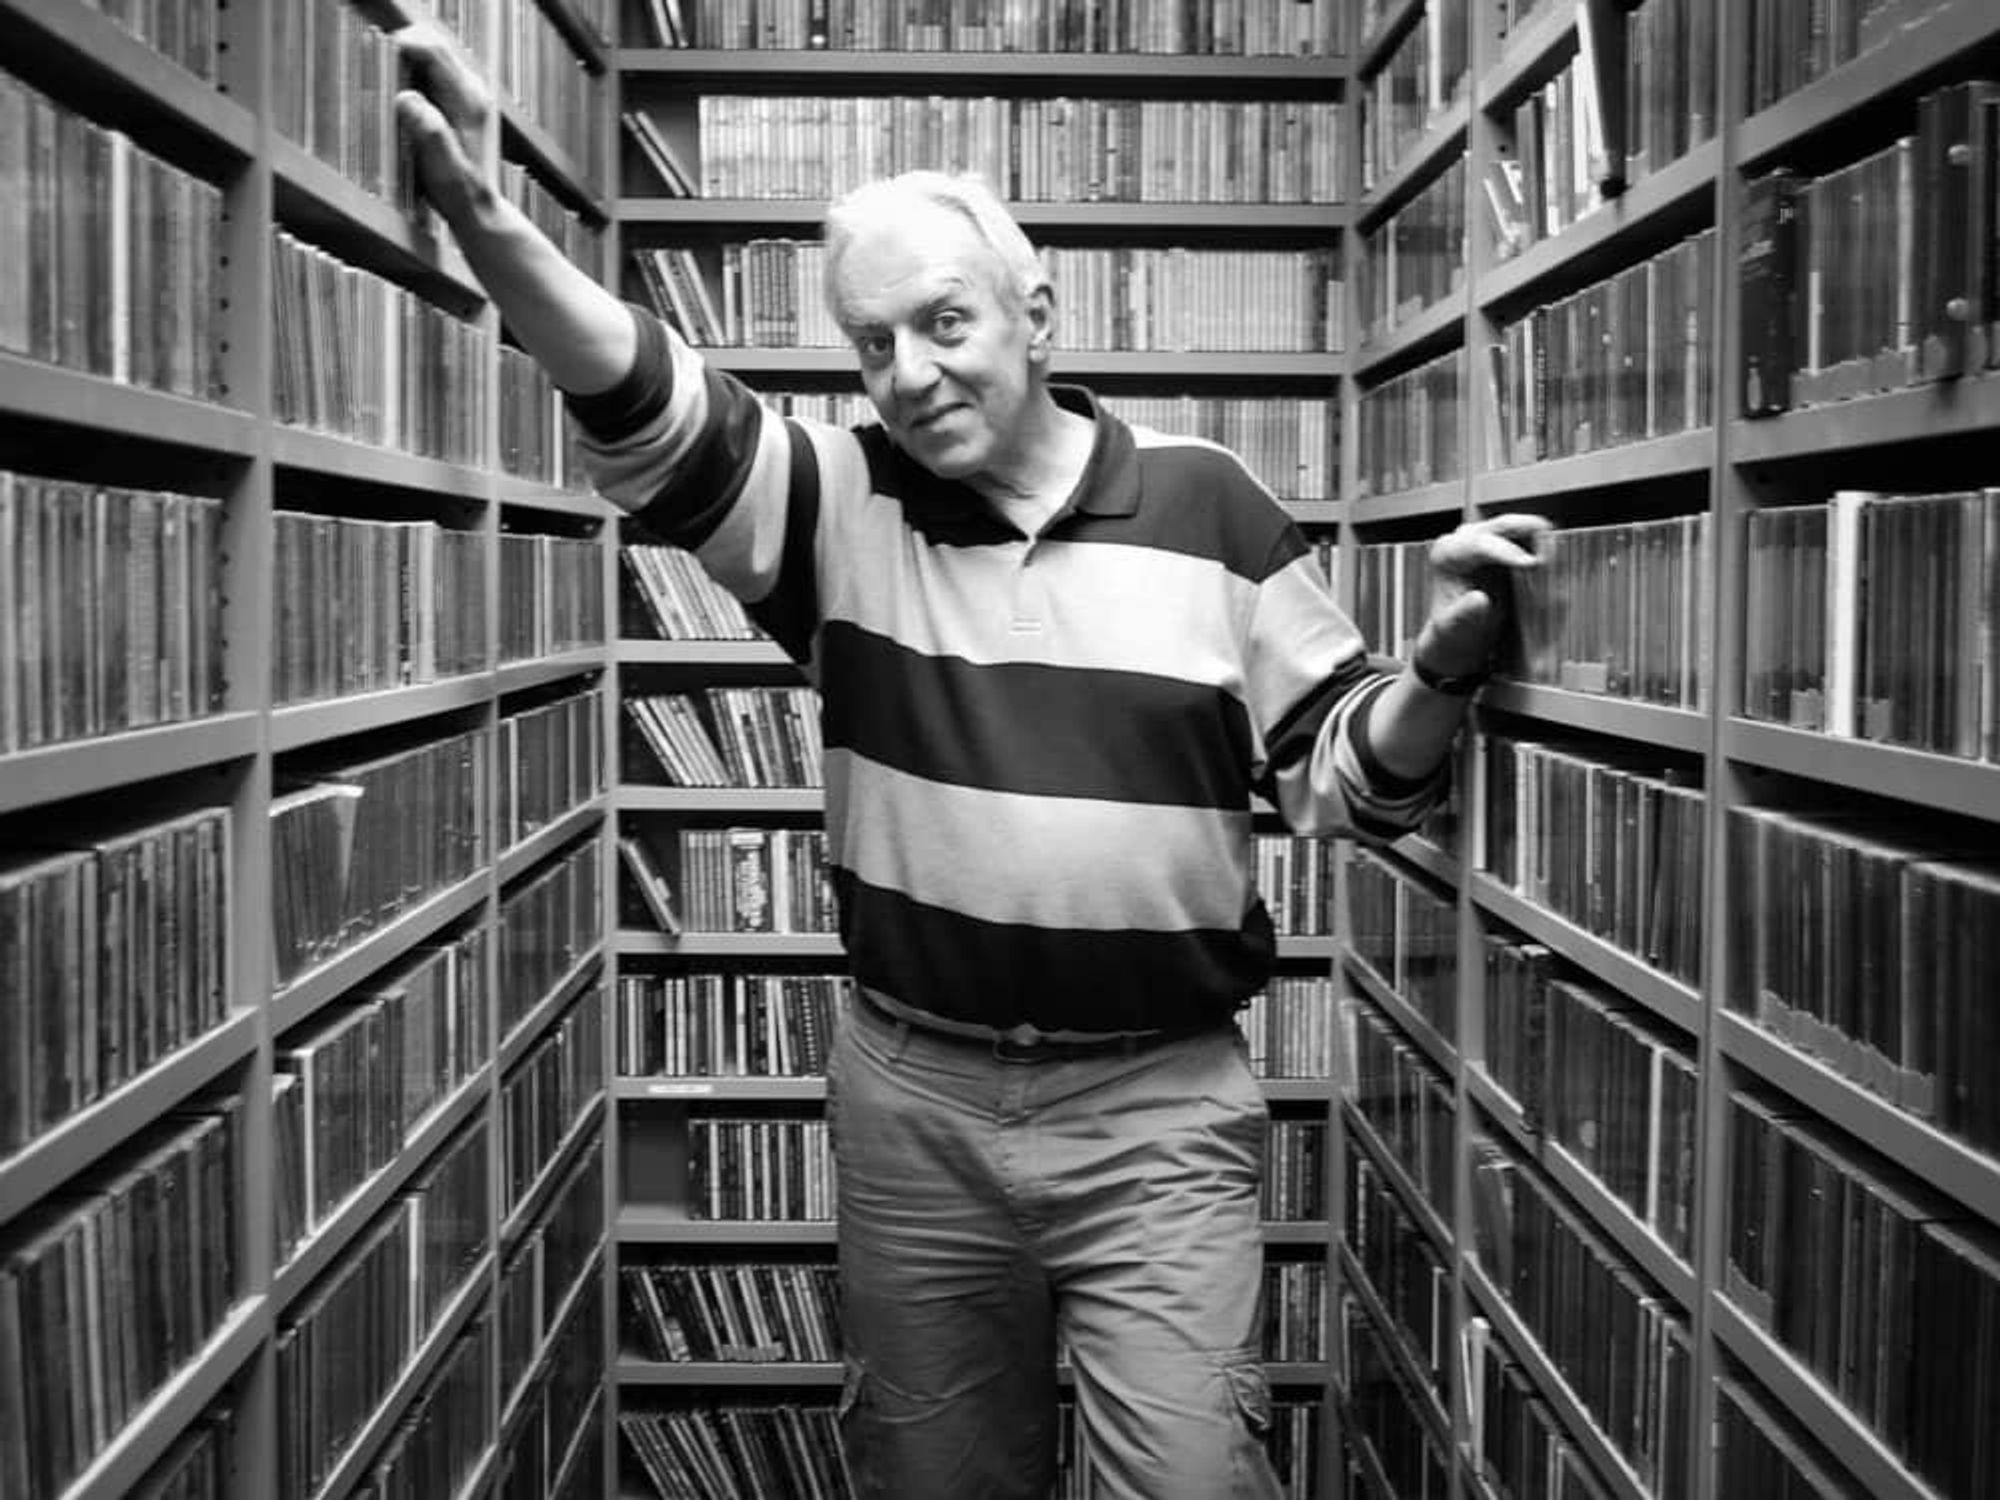 John Aielli radio DJ KUT CD music library